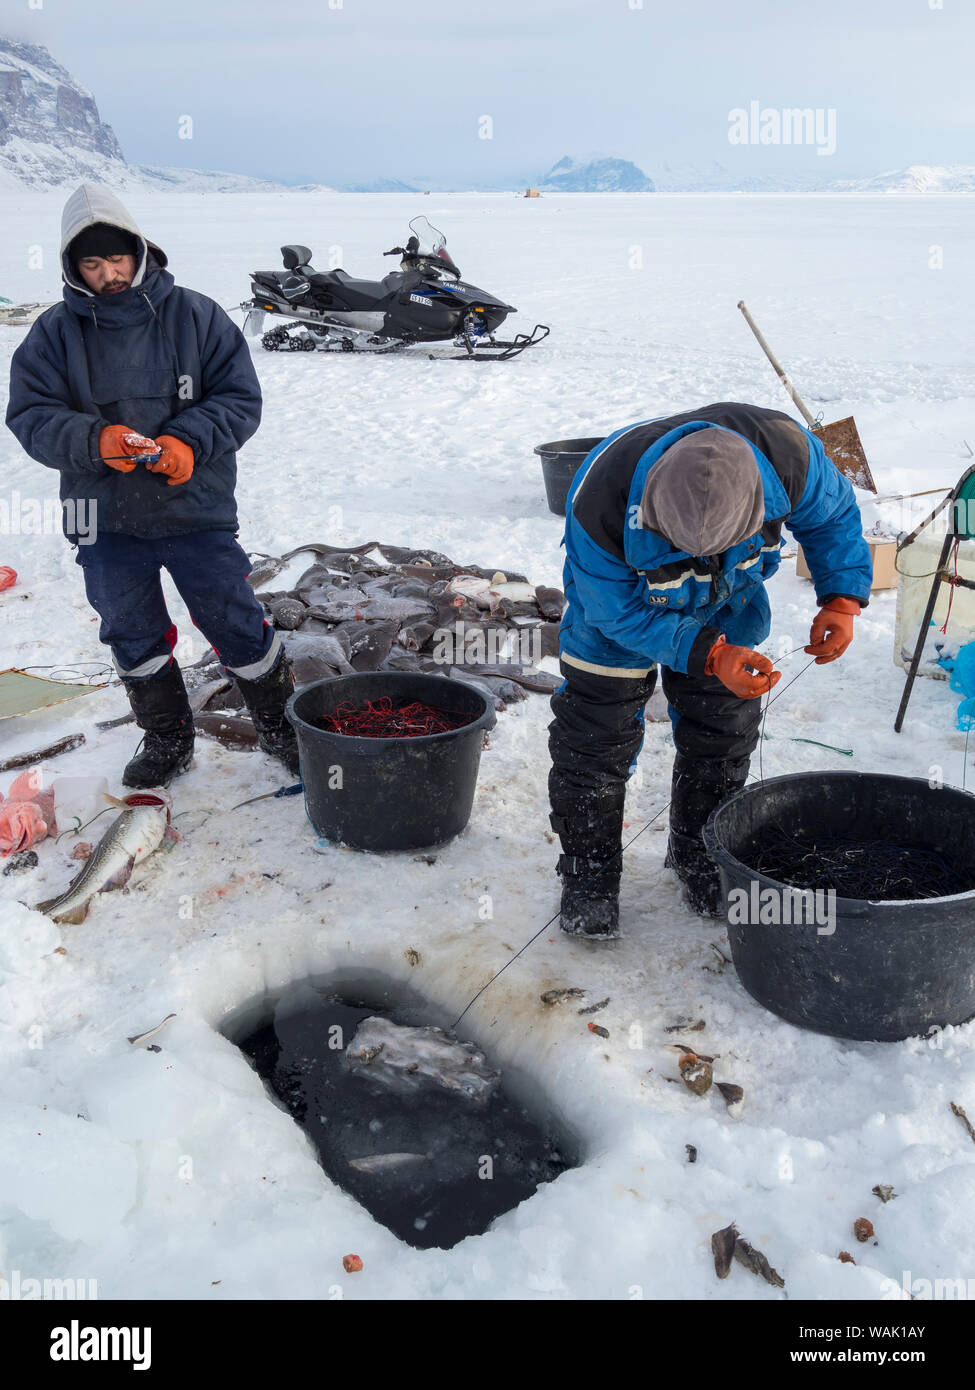 Les pêcheurs de l'Uummannaq au Groenland, système Fjord. Les fjords sont gelés en hiver, les pêcheurs utilisent des traîneaux à conduire à des trous dans la glace. Ils lignes inférieures avec appât jusqu'à 1000 mètres. (Usage éditorial uniquement) Banque D'Images